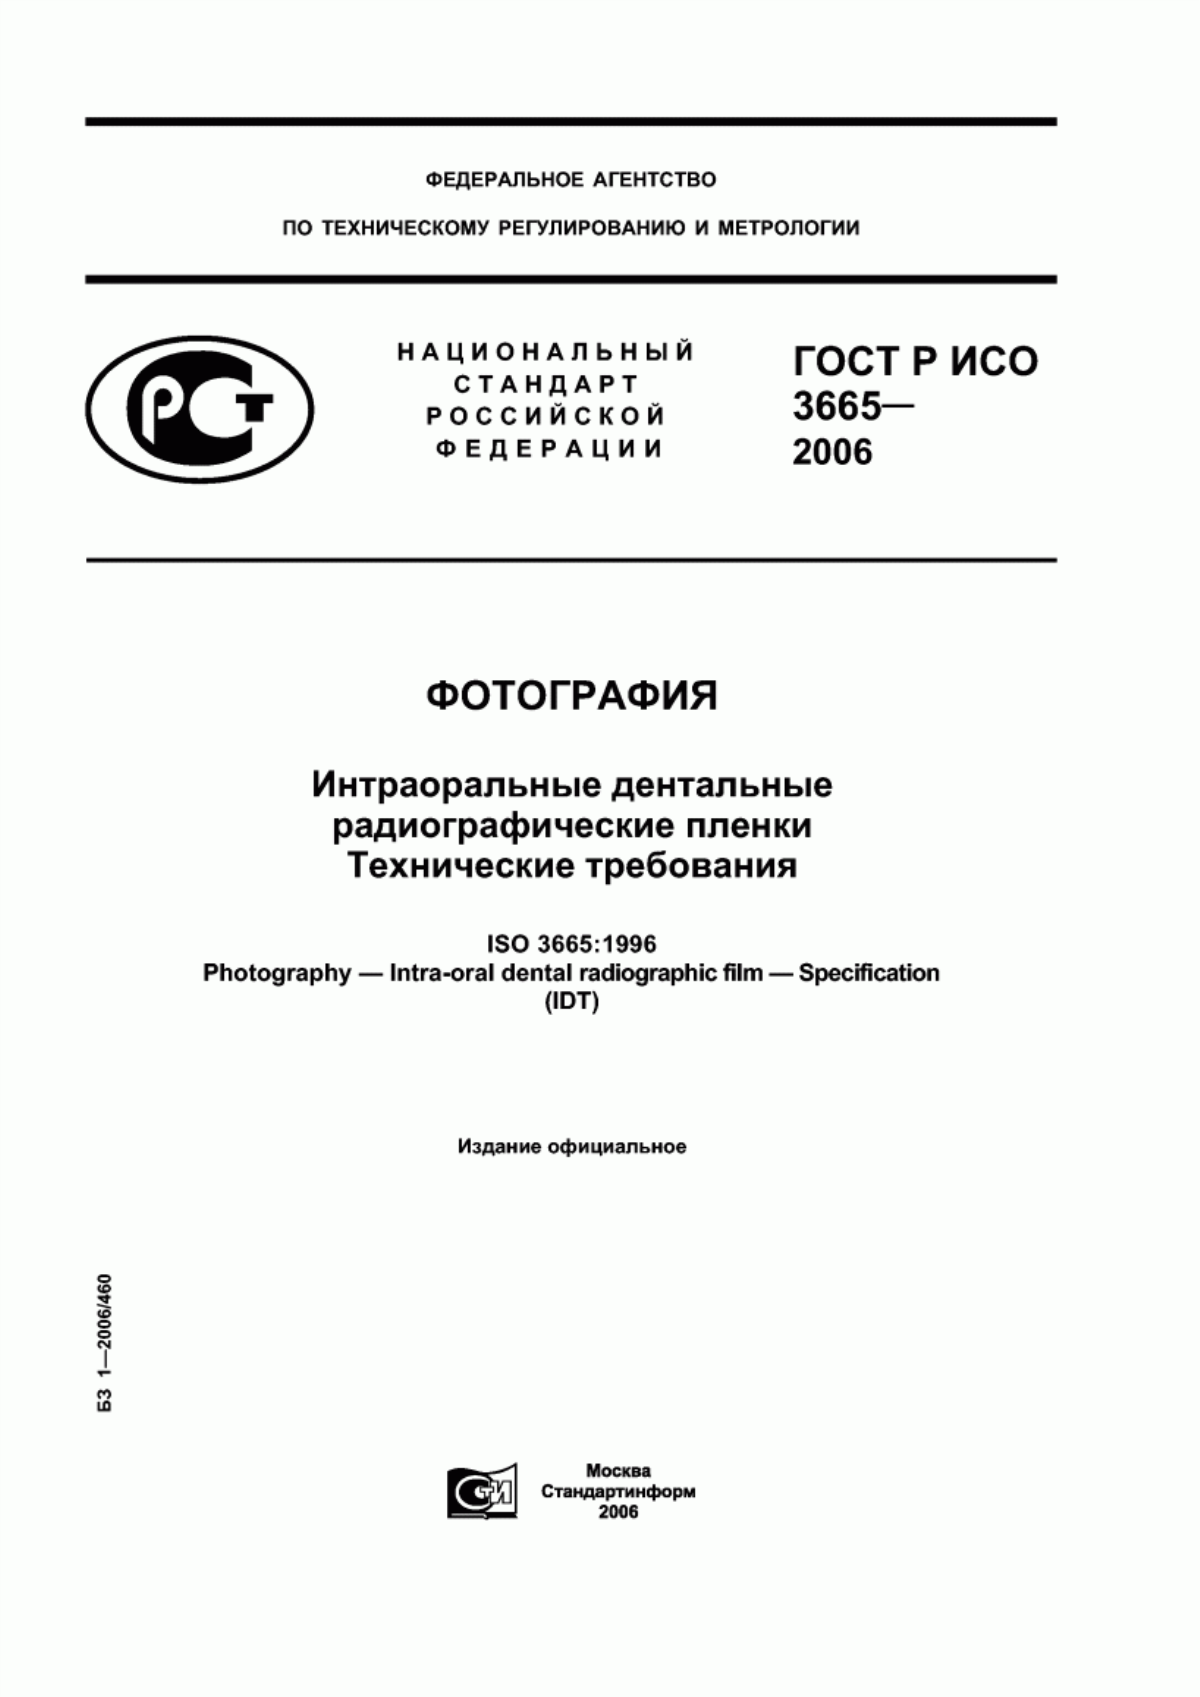 ГОСТ Р ИСО 3665-2006 Фотография. Интраоральные дентальные радиографические пленки. Технические требования